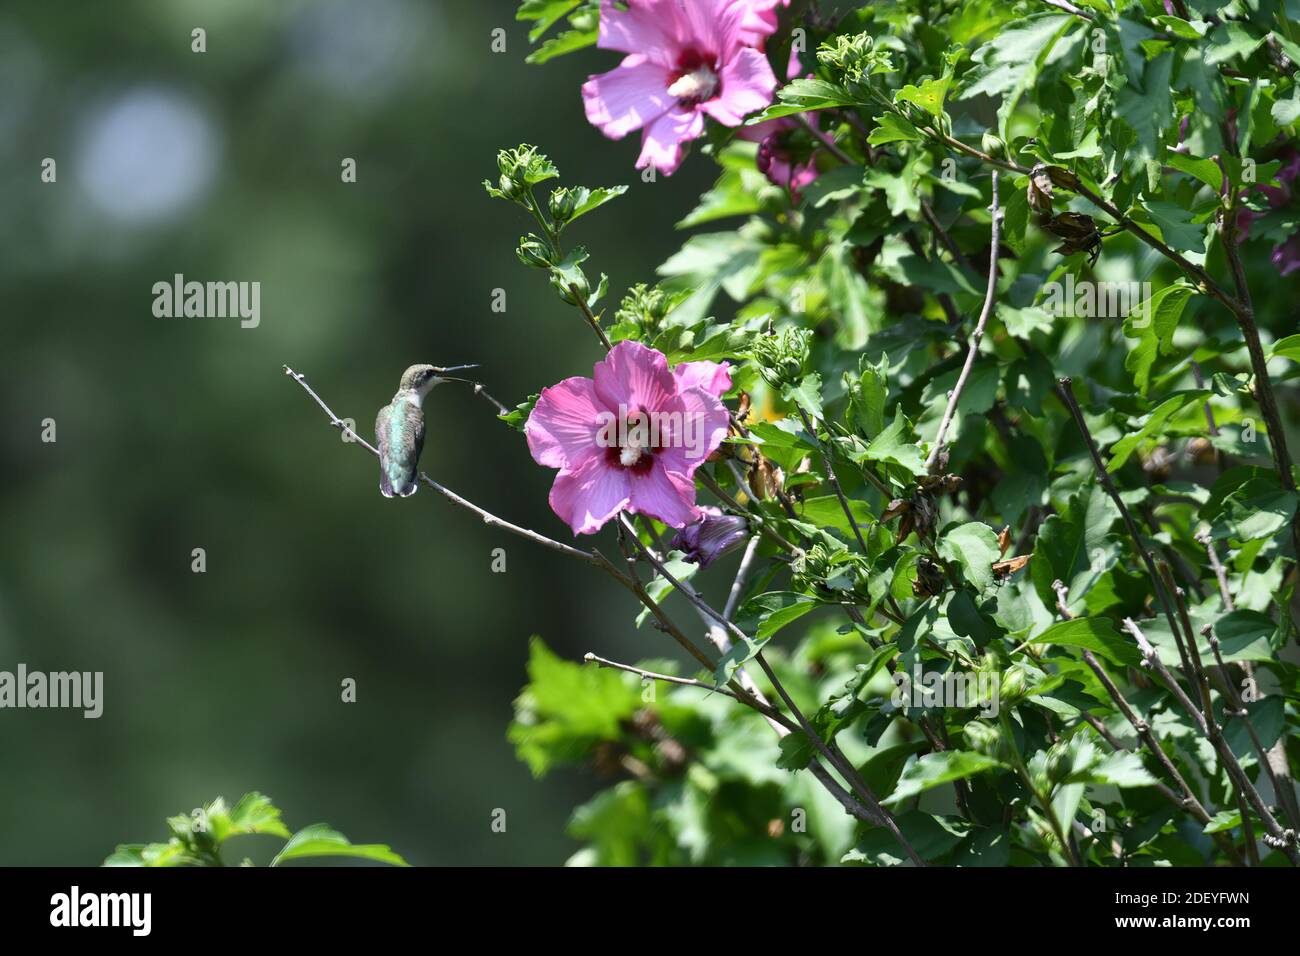 Rubinkehliger Kolibri, der auf der Rose von Sharon Bush in der Nähe von Flower thront Mit Schnabel offen und Pollen am Schnabel Stockfoto